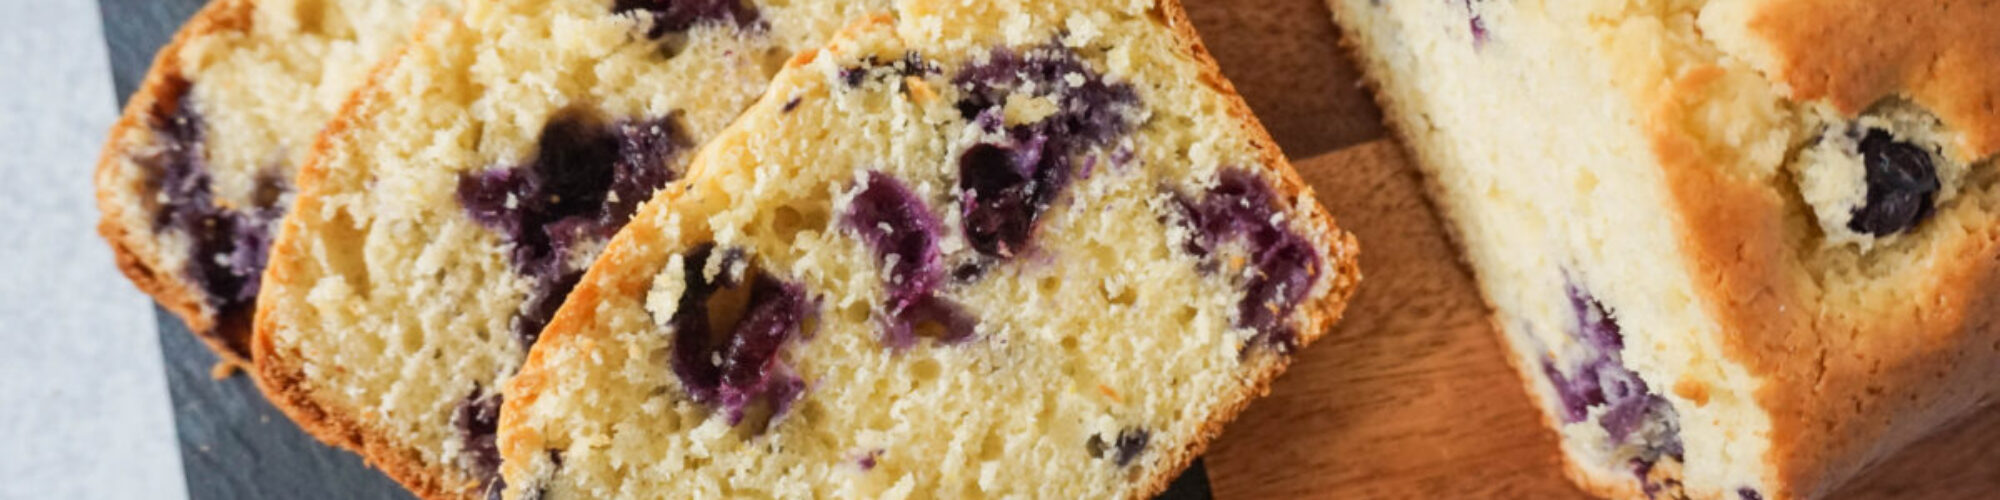 lemon blueberry breakfast bread